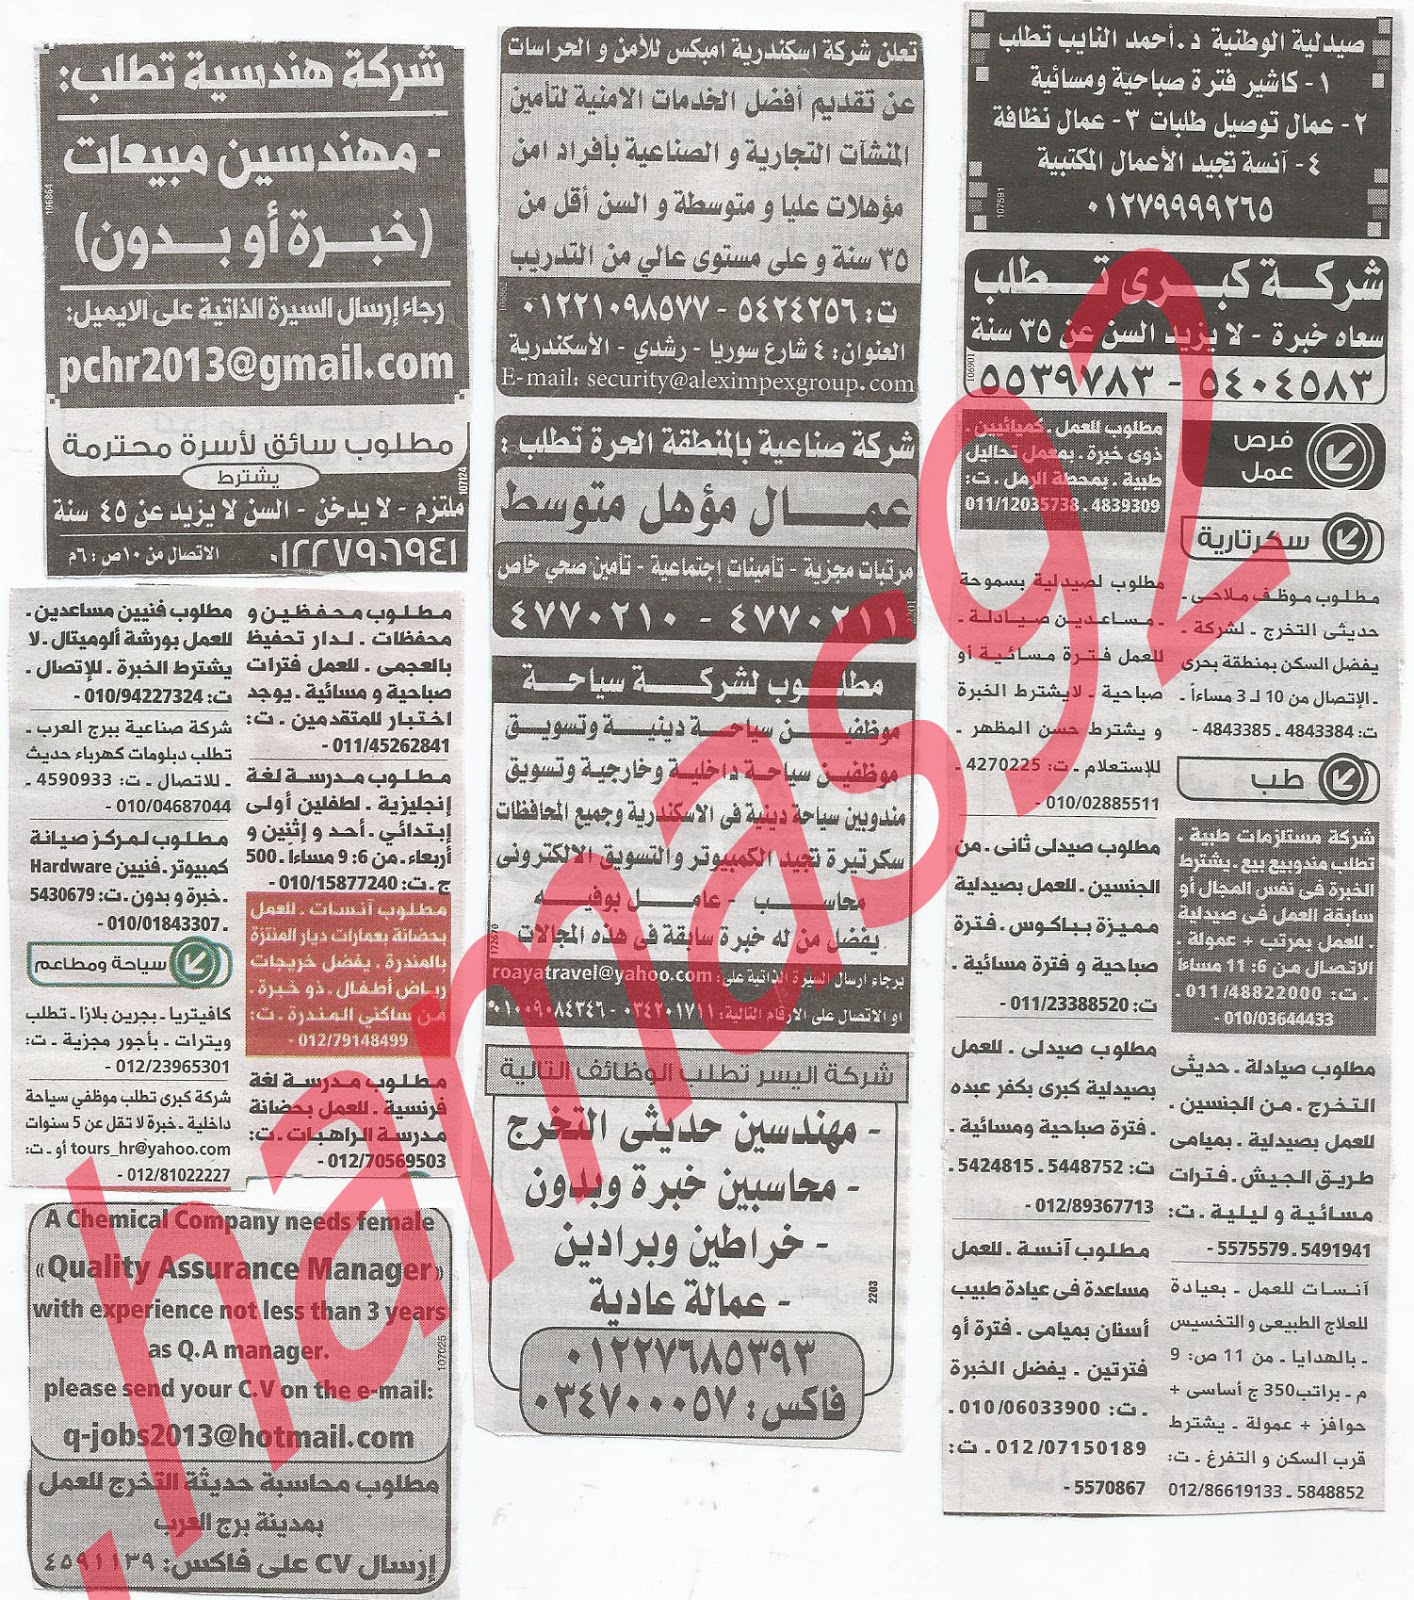 وظائف خالية من جريدة الوسيط الاسكندرية الثلاثاء 4/12/2012 - وظائف عديدة %D9%88+%D8%B3+%D8%B3+6